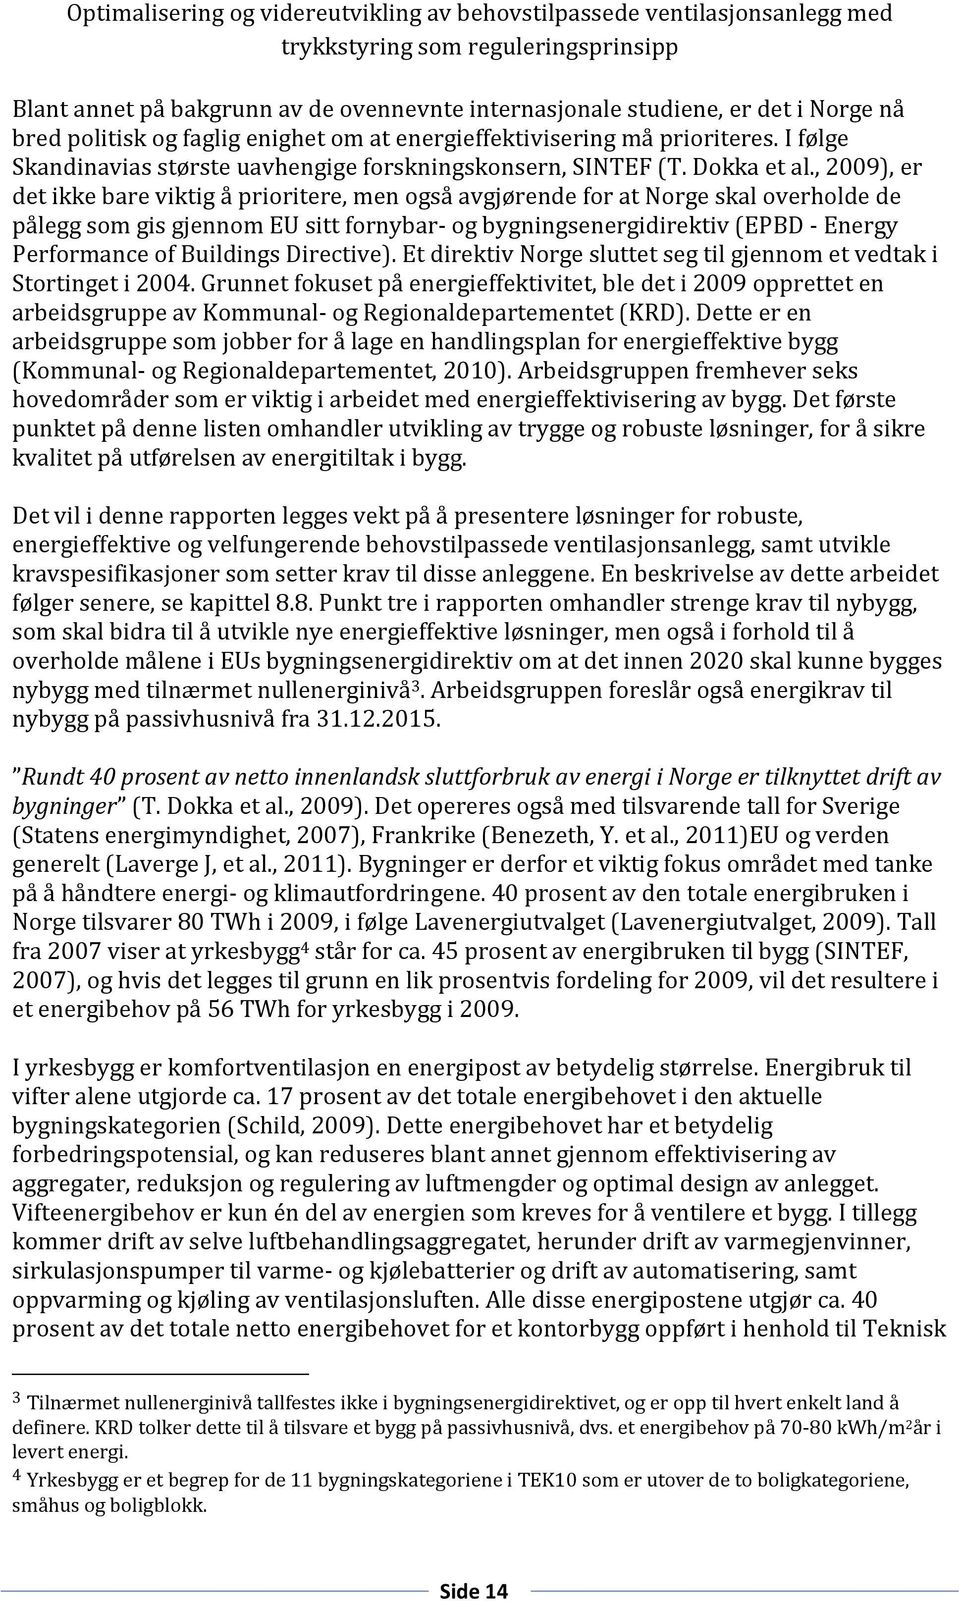 , 2009), er det ikke bare viktig å prioritere, men også avgjørende for at Norge skal overholde de pålegg som gis gjennom EU sitt fornybar- og bygningsenergidirektiv (EPBD - Energy Performance of